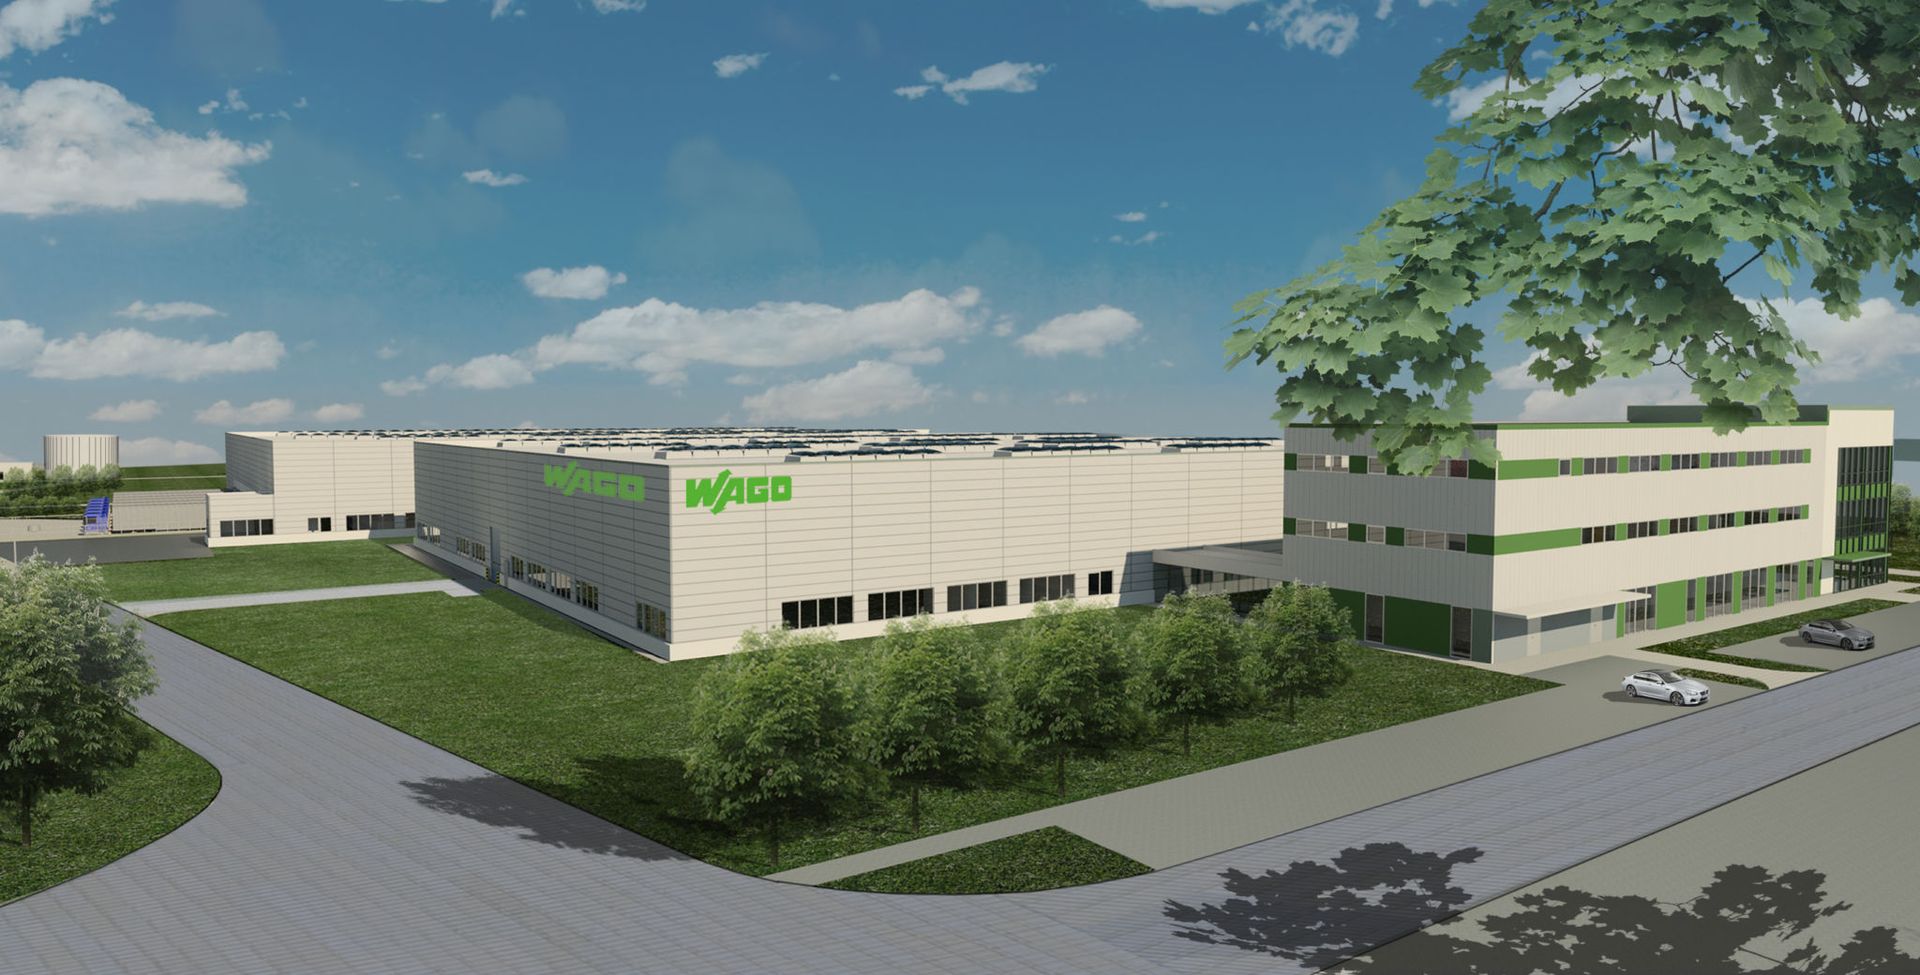  WAGO ELWAG rozpoczęło budowę nowej fabryki pod Wrocławiem